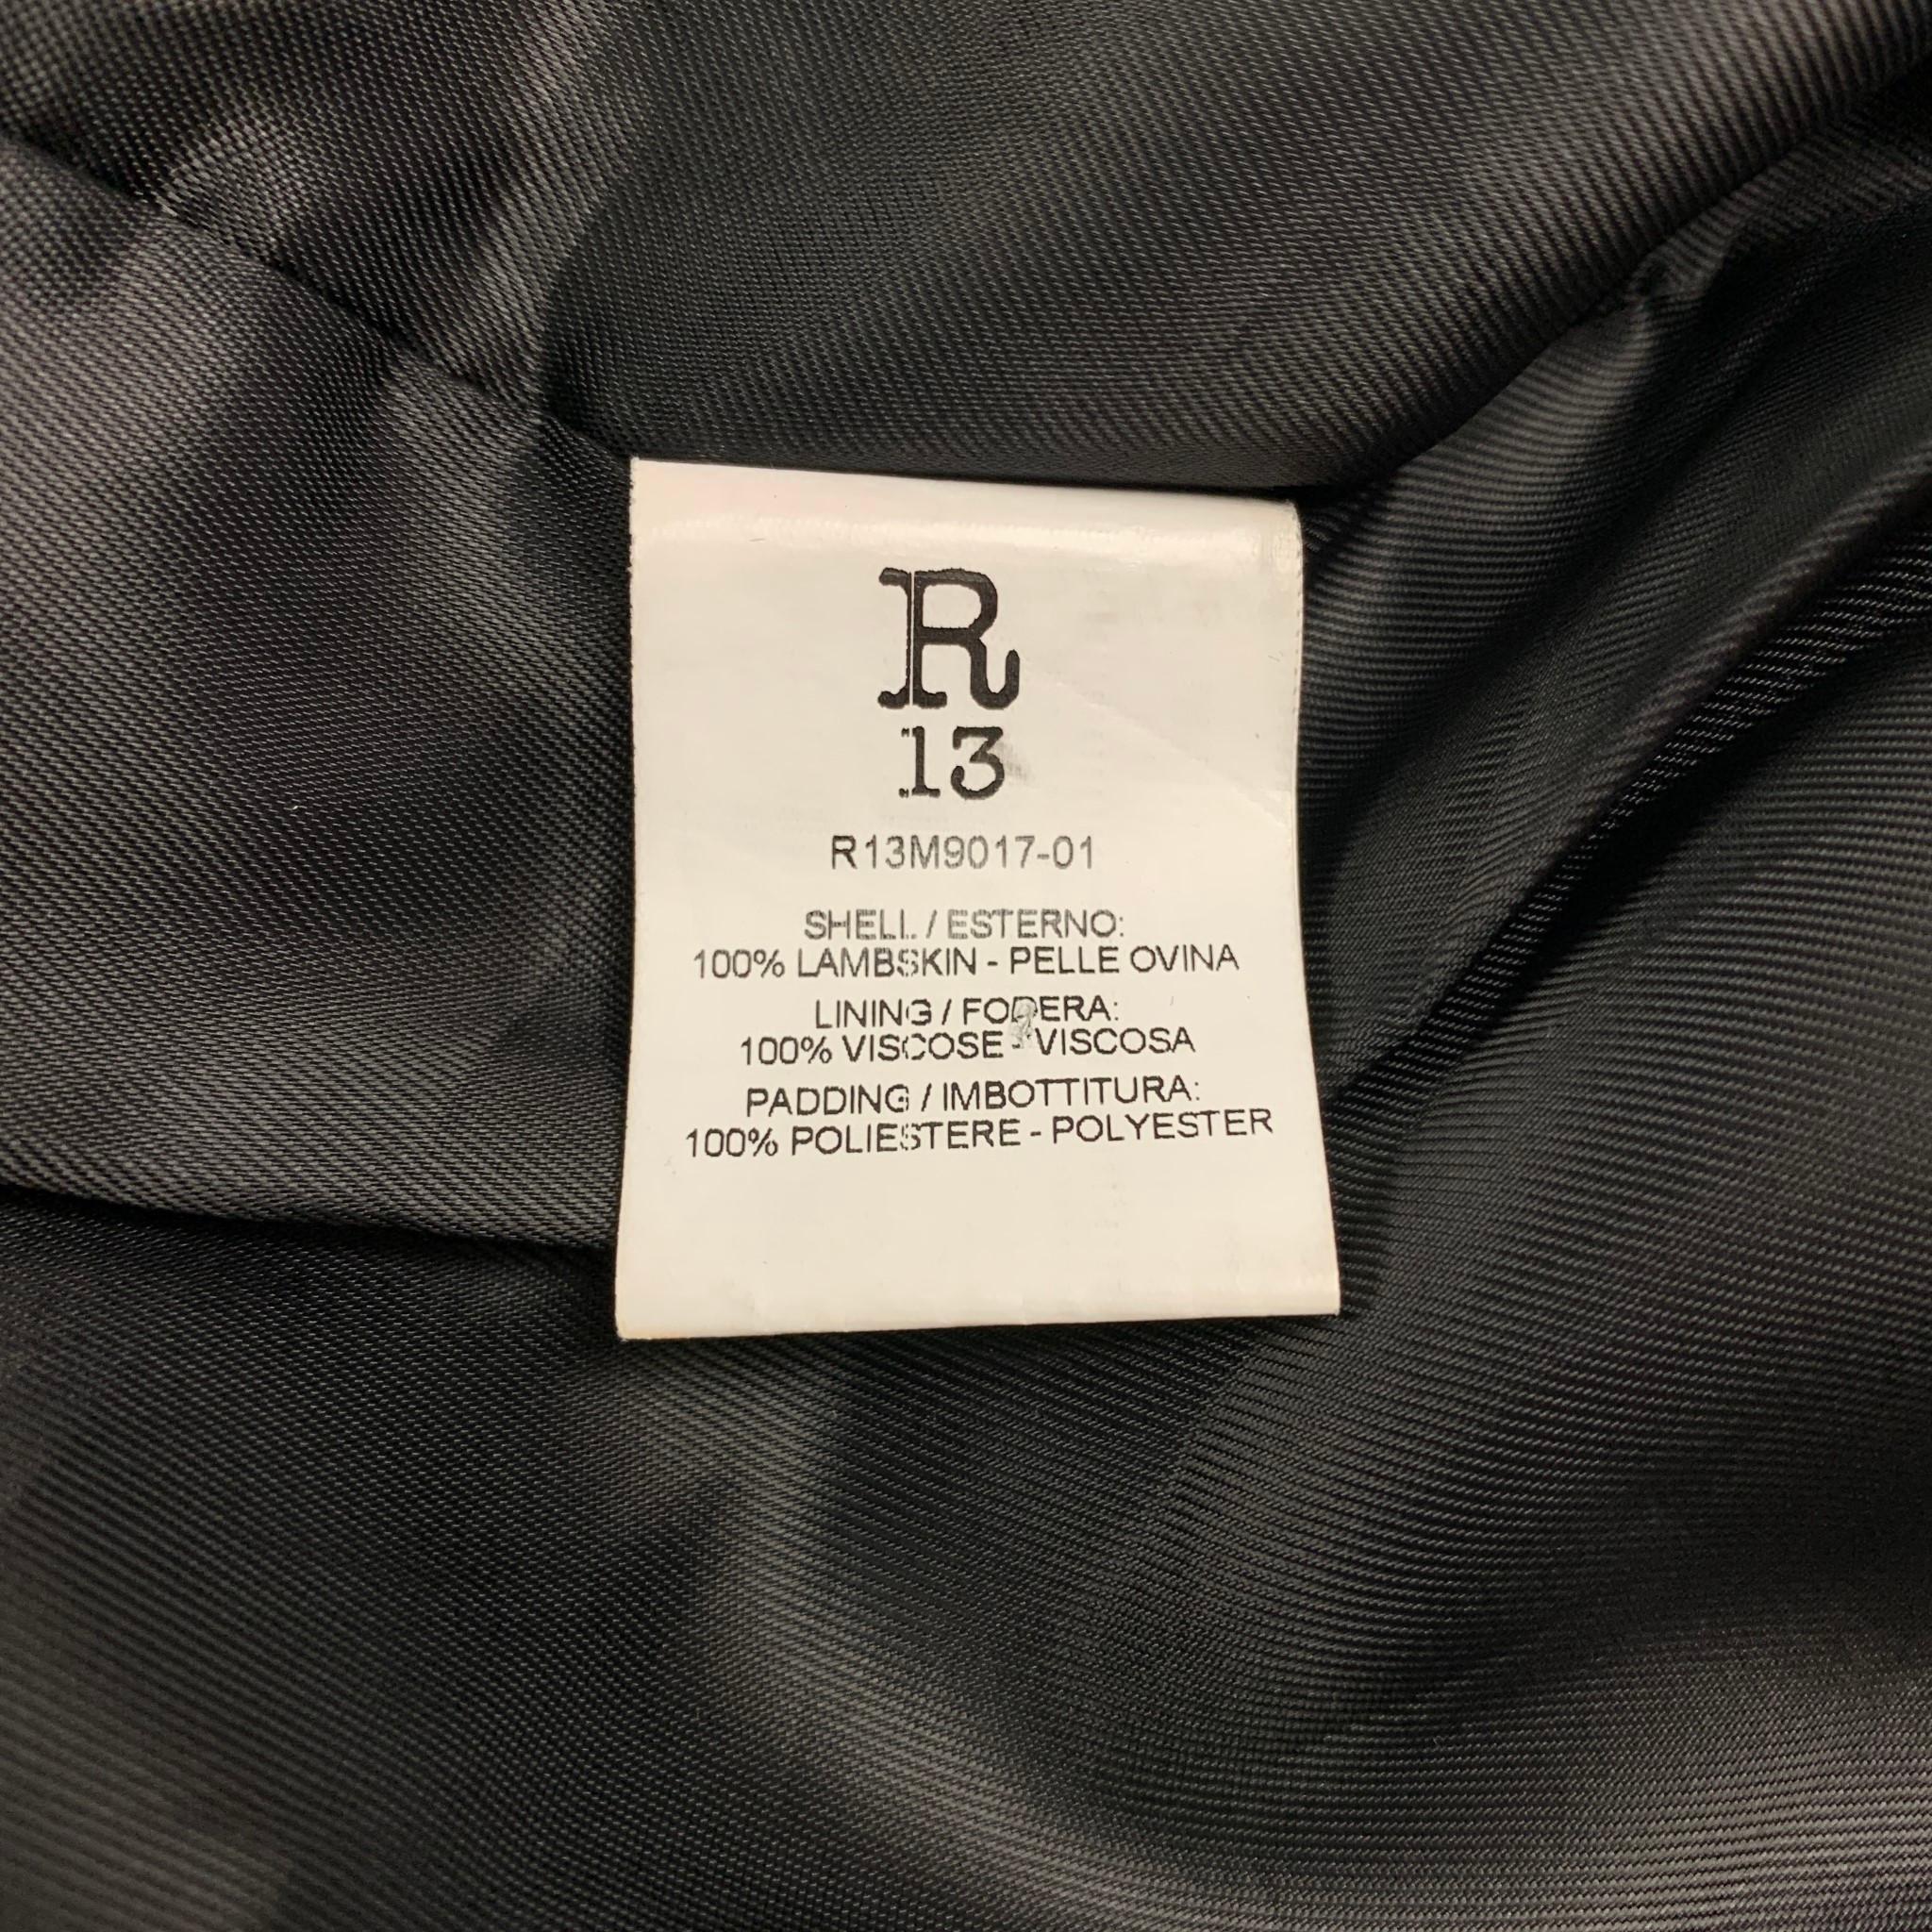 R13 Size M Black Leather Brooklyn USA Biker Jacket 1